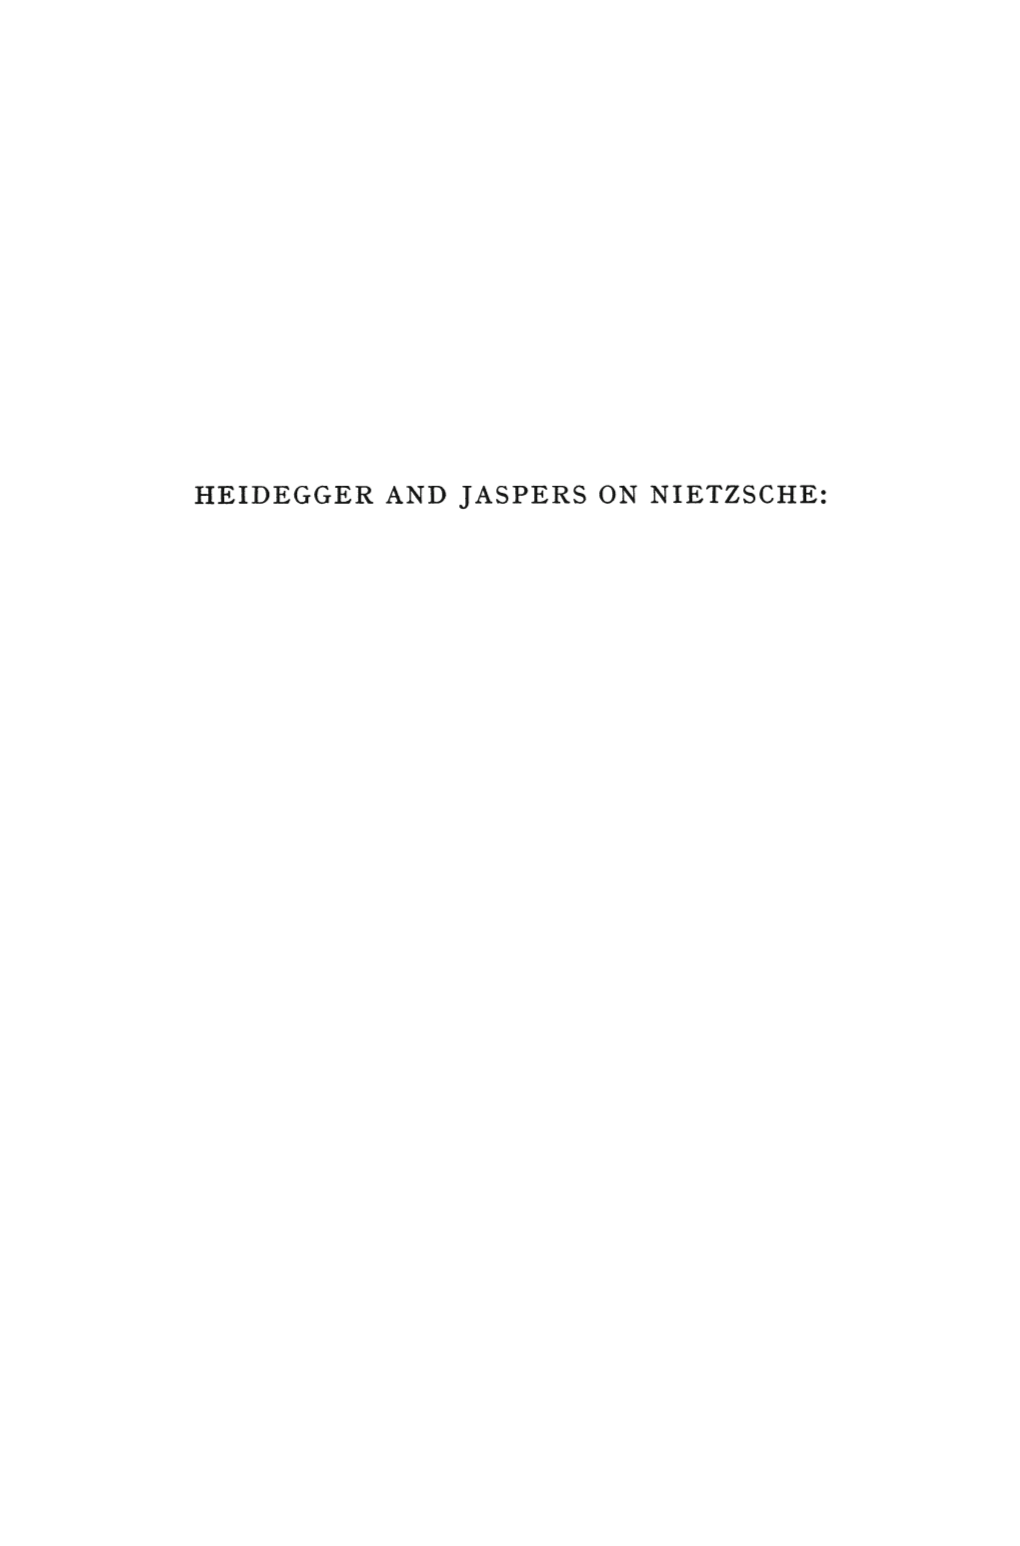 Heidegger and Jaspers on Nietzsche: Heidegger and Jaspers on Nietzsche